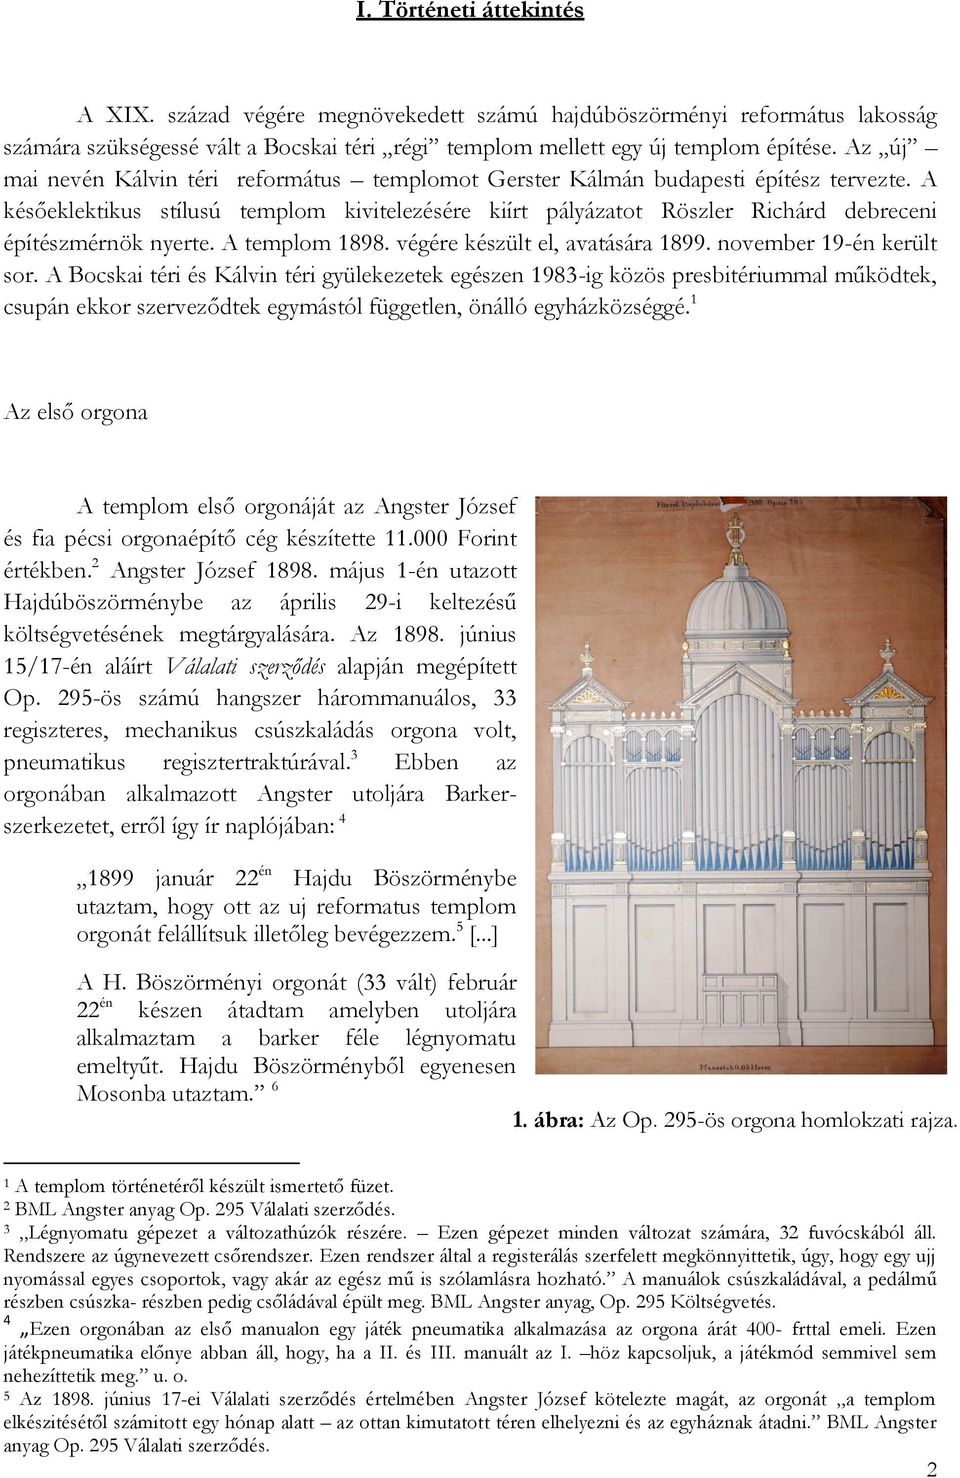 A későeklektikus stílusú templom kivitelezésére kiírt pályázatot Röszler Richárd debreceni építészmérnök nyerte. A templom 1898. végére készült el, avatására 1899. november 19-én került sor.